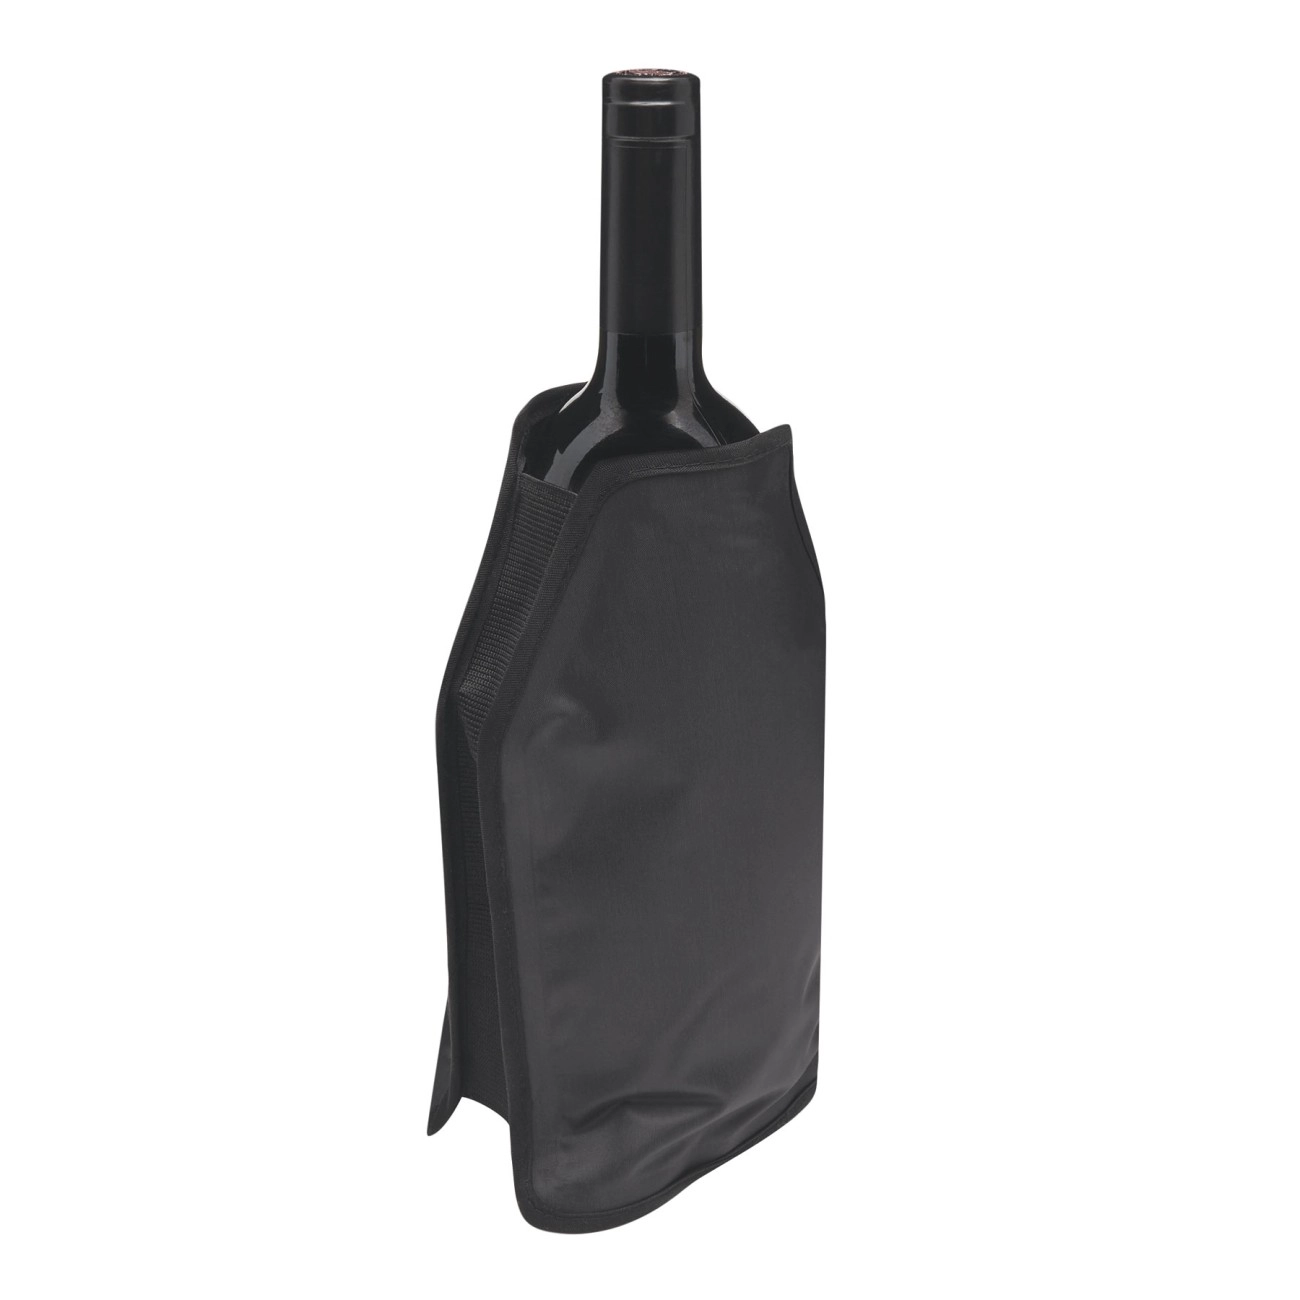 Pokrowiec chłodzący na butelki COOLING BAG, czarny 56-0606168